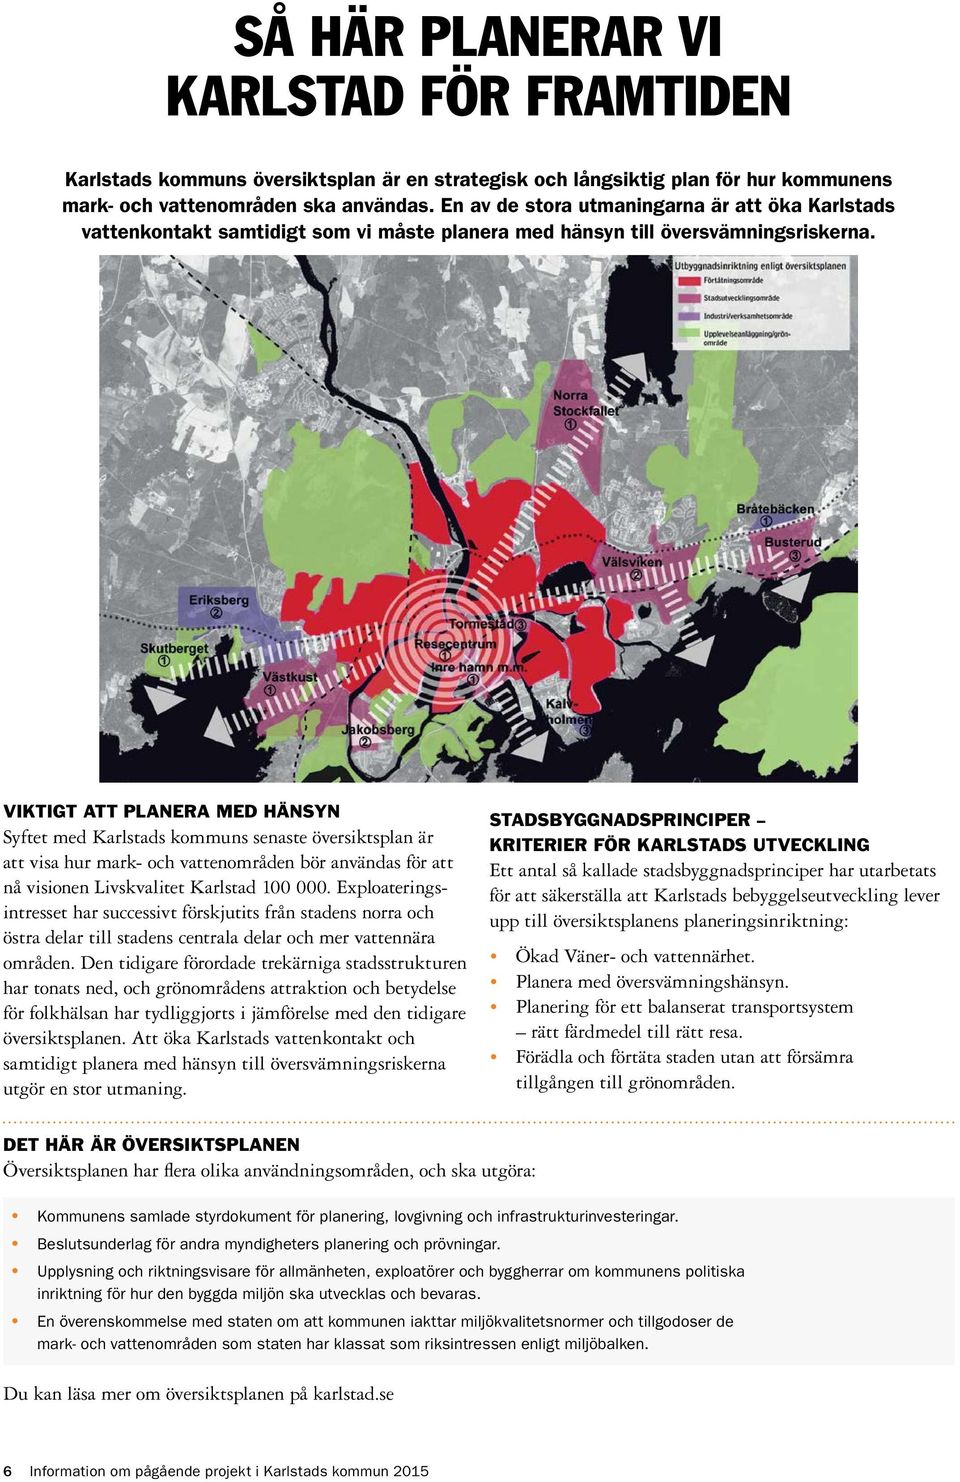 VIKTIGT ATT PLANERA MED HÄNSYN Syftet med Karlstads kommuns senaste översiktsplan är att visa hur mark- och vattenområden bör användas för att nå visionen Livskvalitet Karlstad 100 000.